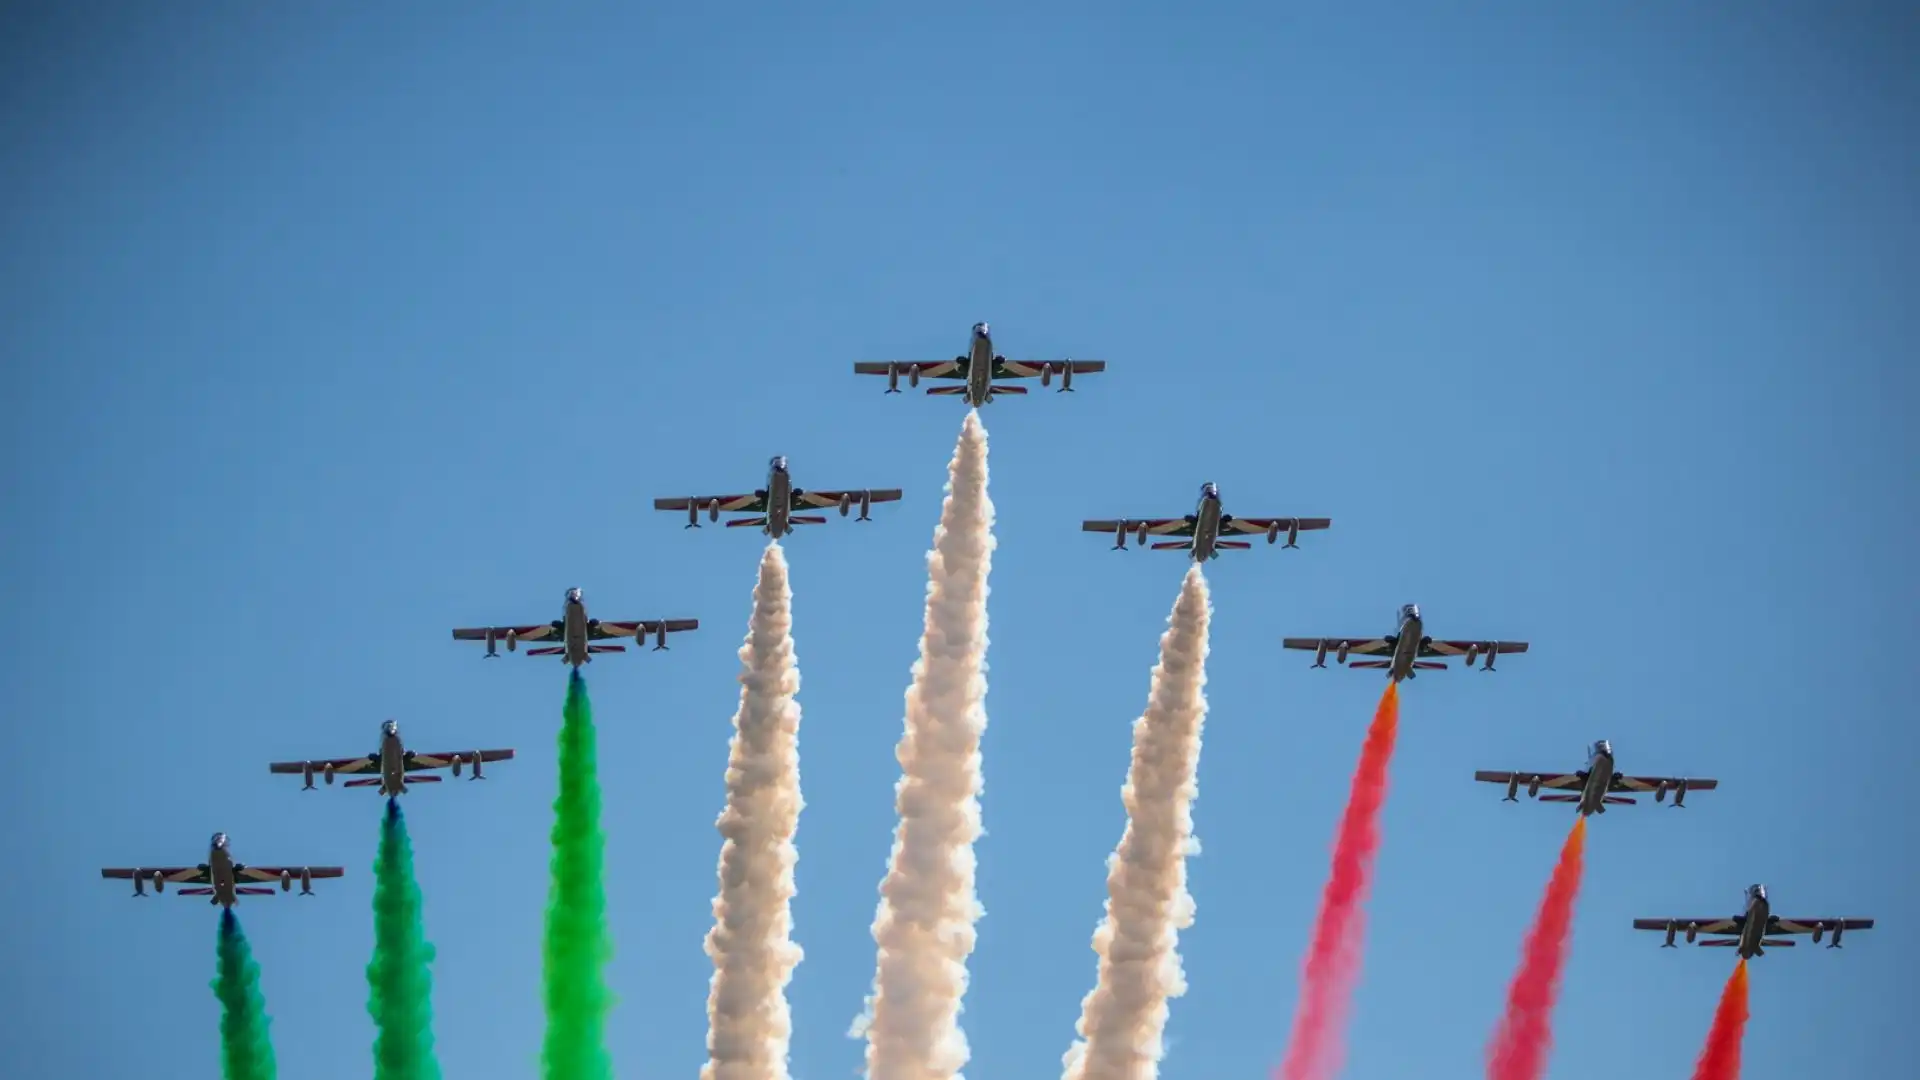 Le Frecce Tricolori si sono esibite prima del Gp d'Italia. Foto di Cristian Lovati